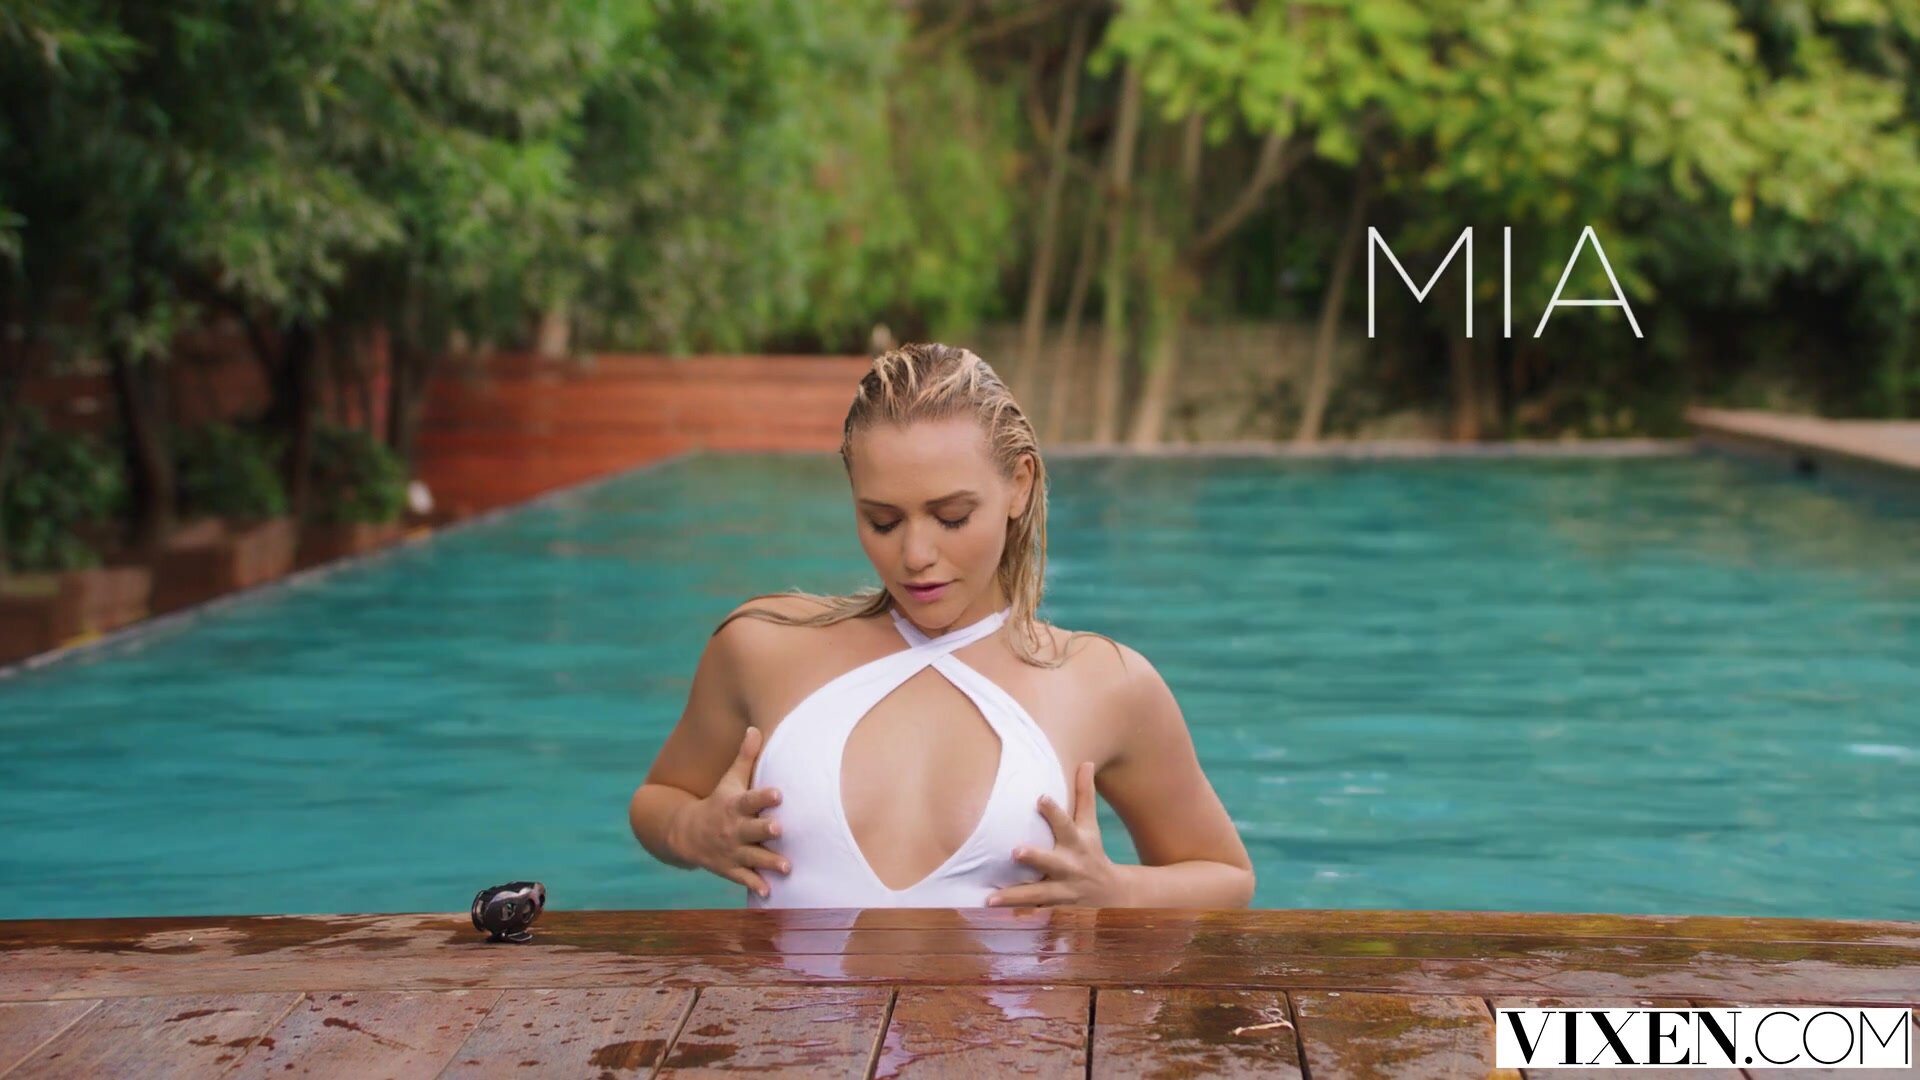 Mia Malkova Hd Video Download - Mia malkova|My guests are sex toys|Full HD|1080p